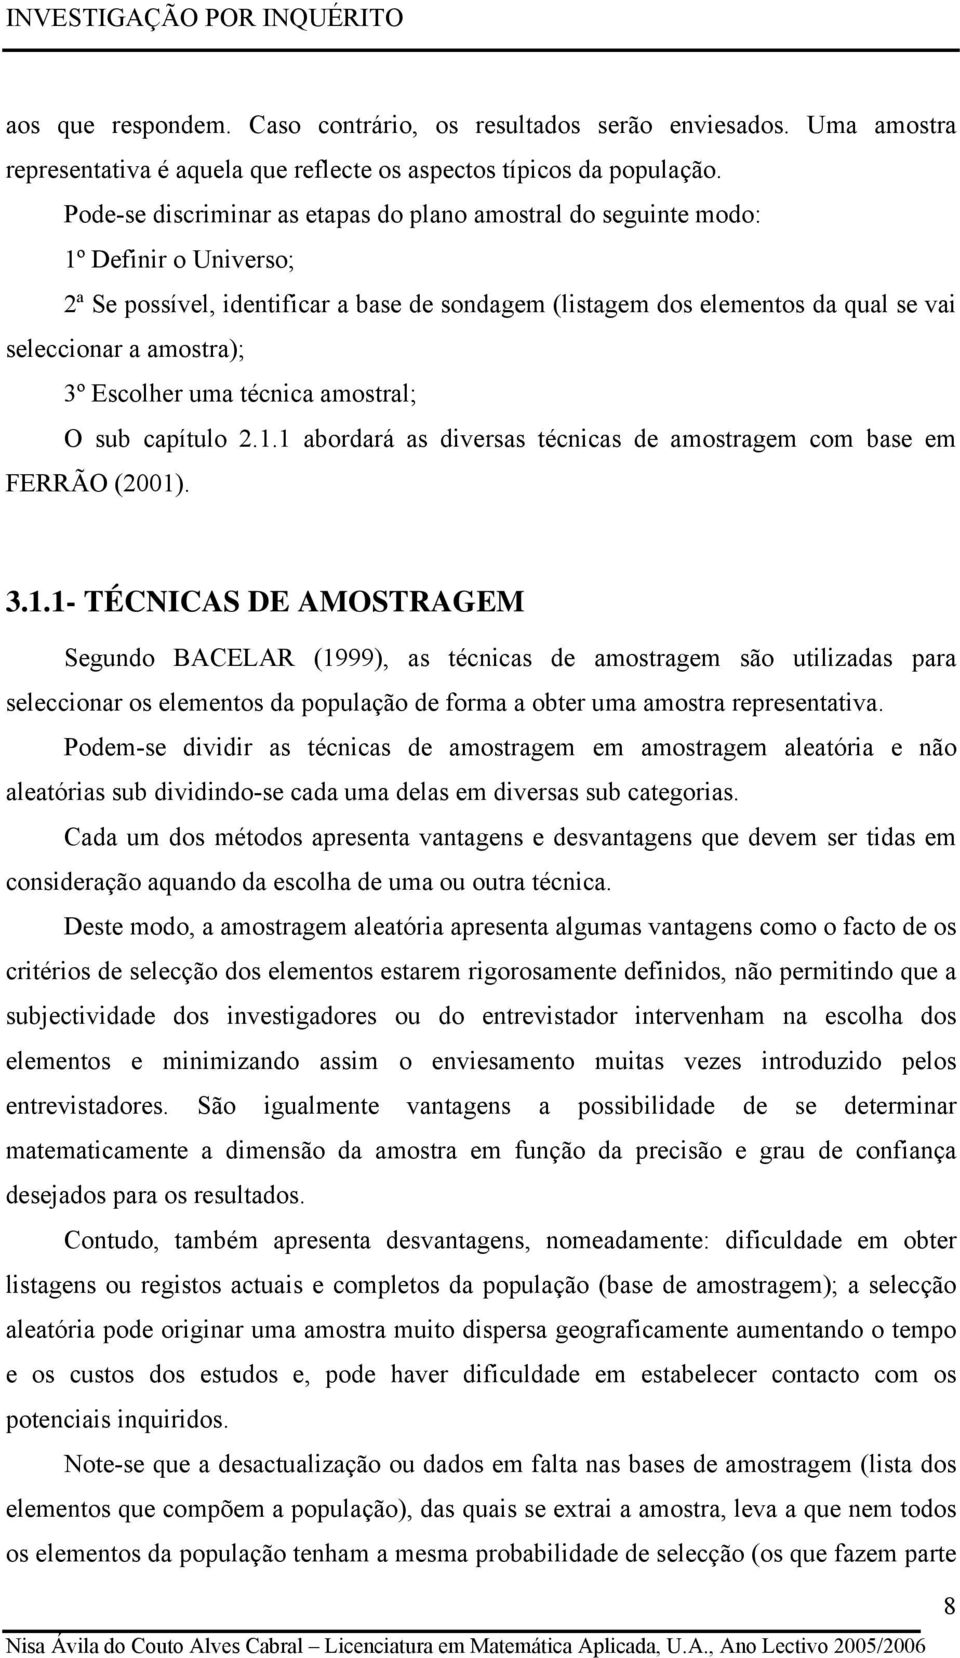 amostral; O sub capítulo.. abordará as dversas téccas de amostragem com base em FERRÃO (00). 3.